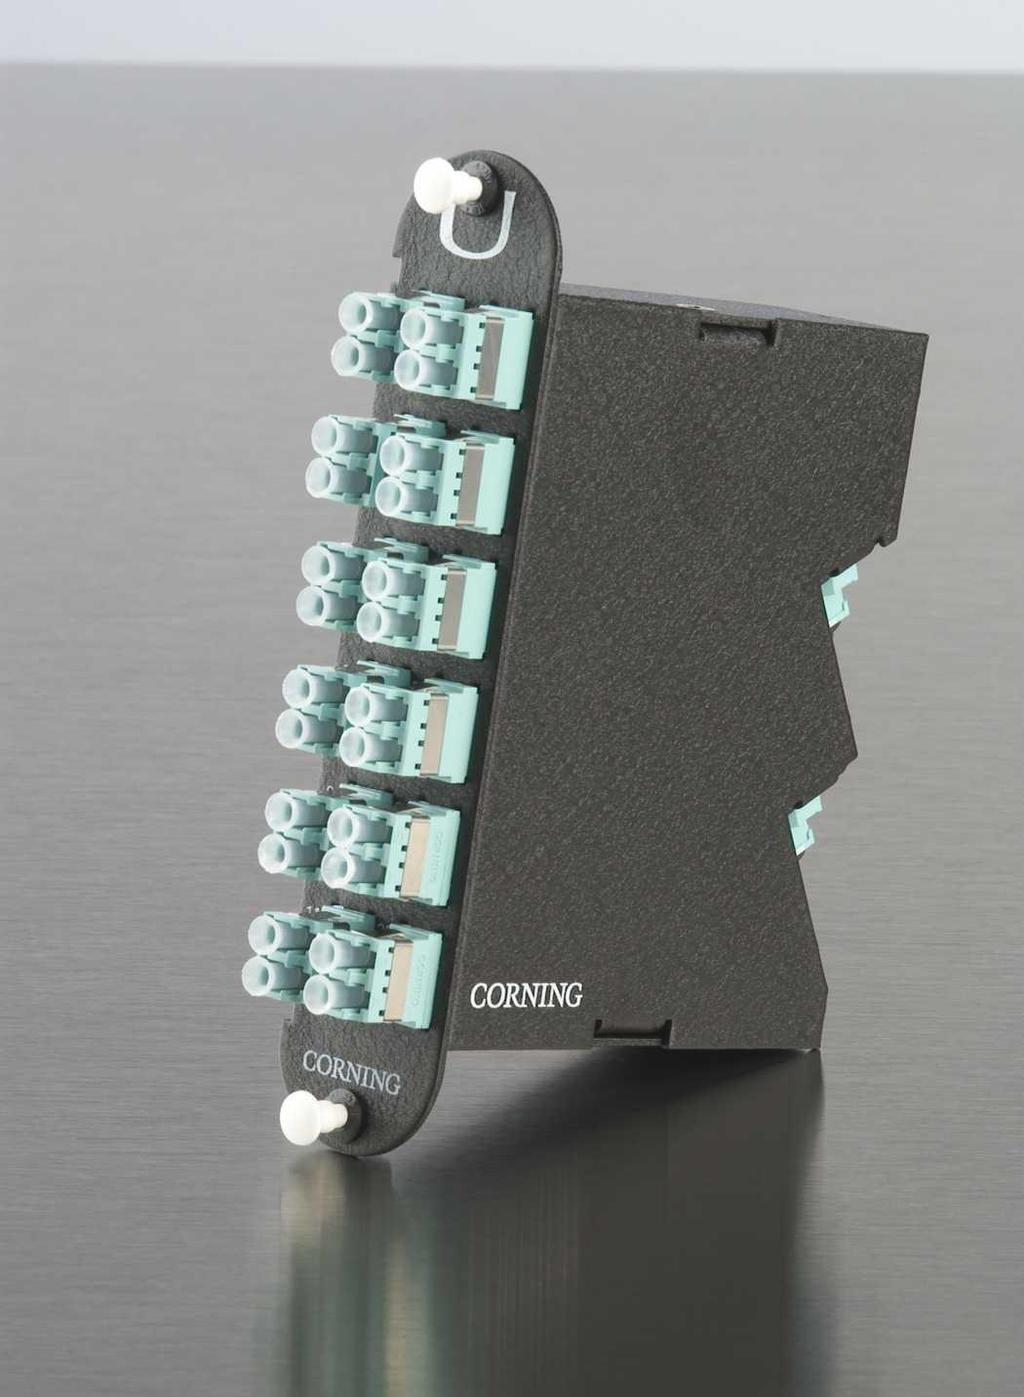 Closet Connector Housing (CCH) Module Verwendung Plug & Play Universal Systems CCH Module von Corning Cable Systems dienen dem Aufteilen der 12 fasrigen MTP Stecker, mit denen die Verbindungskabel